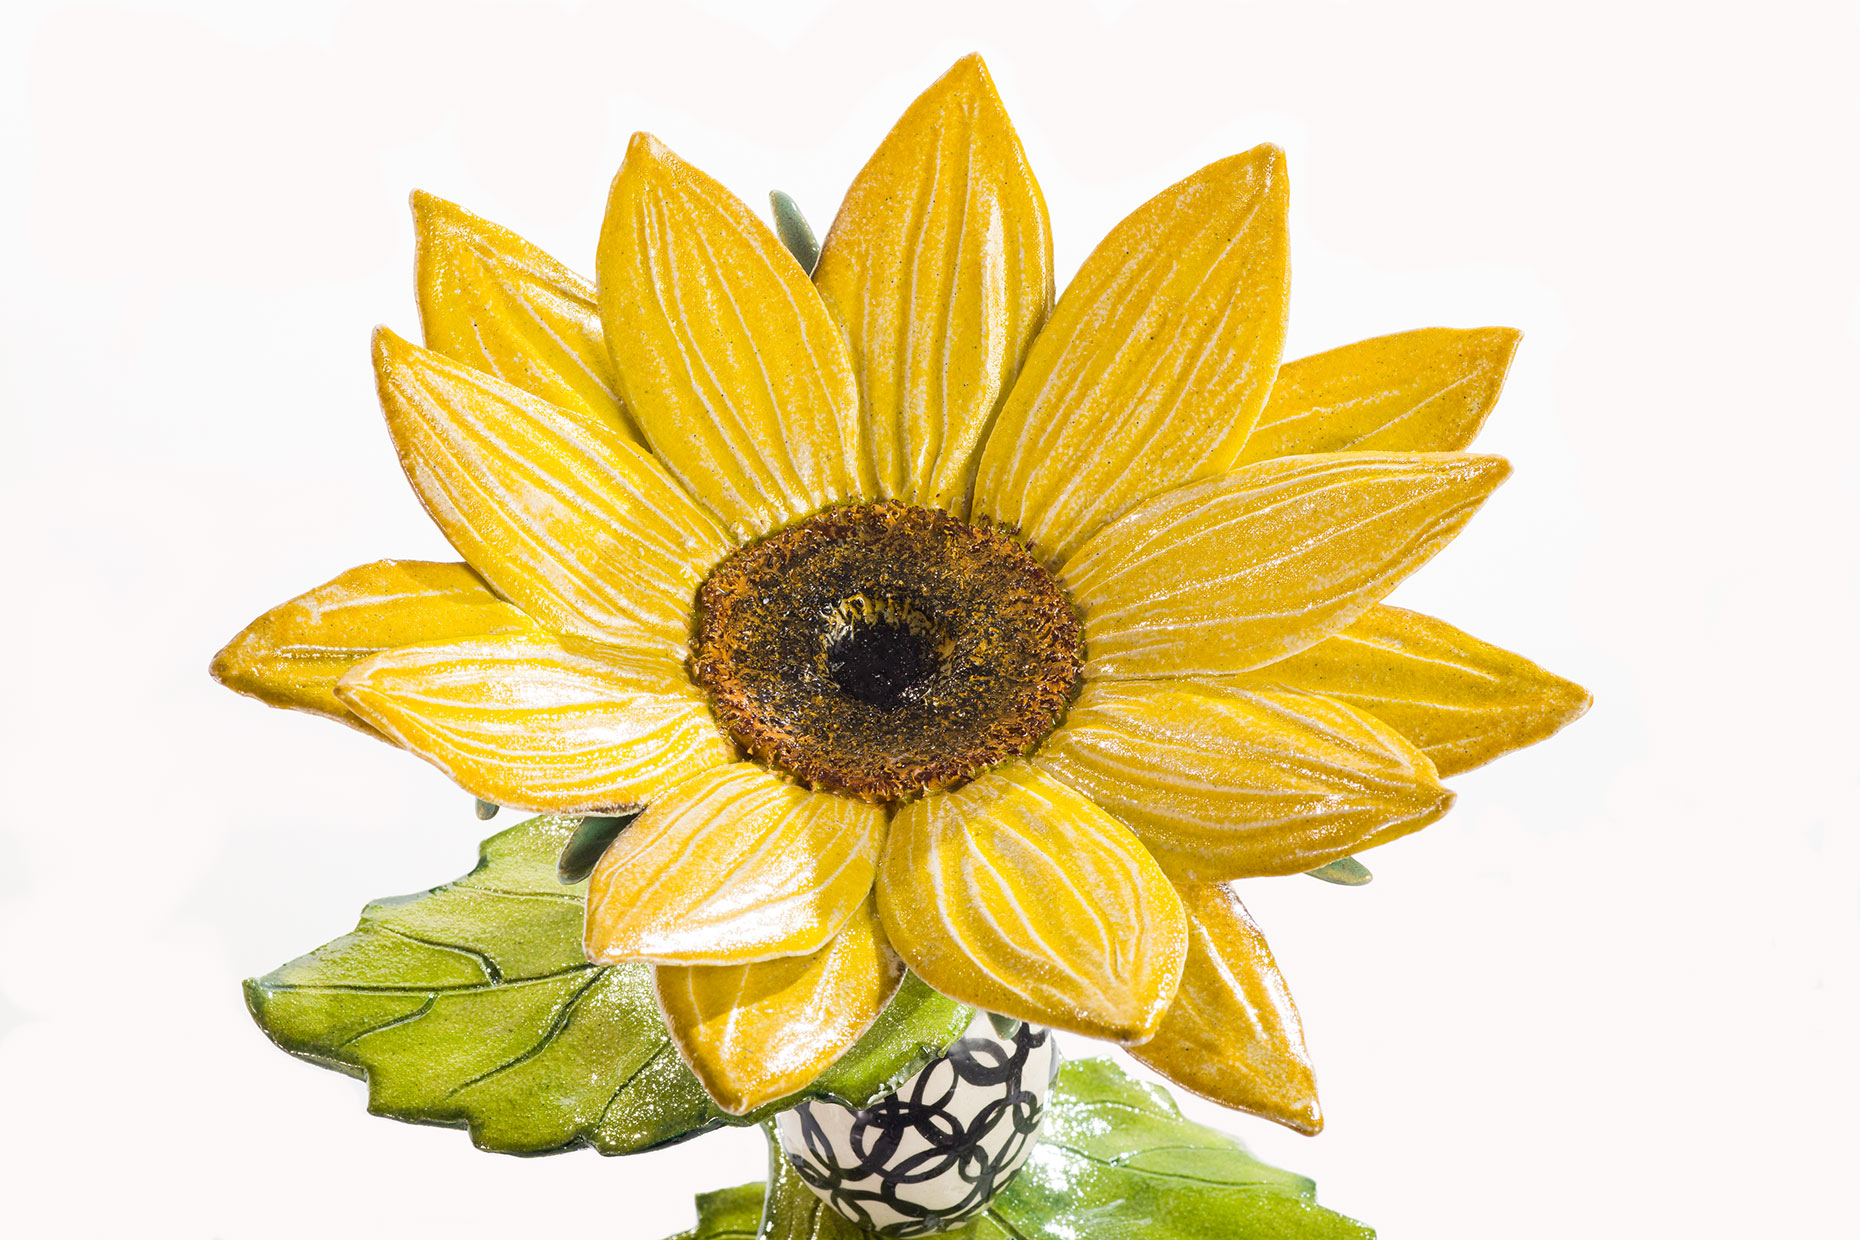 Ceramic Sunflower by Lisa Hoelzl